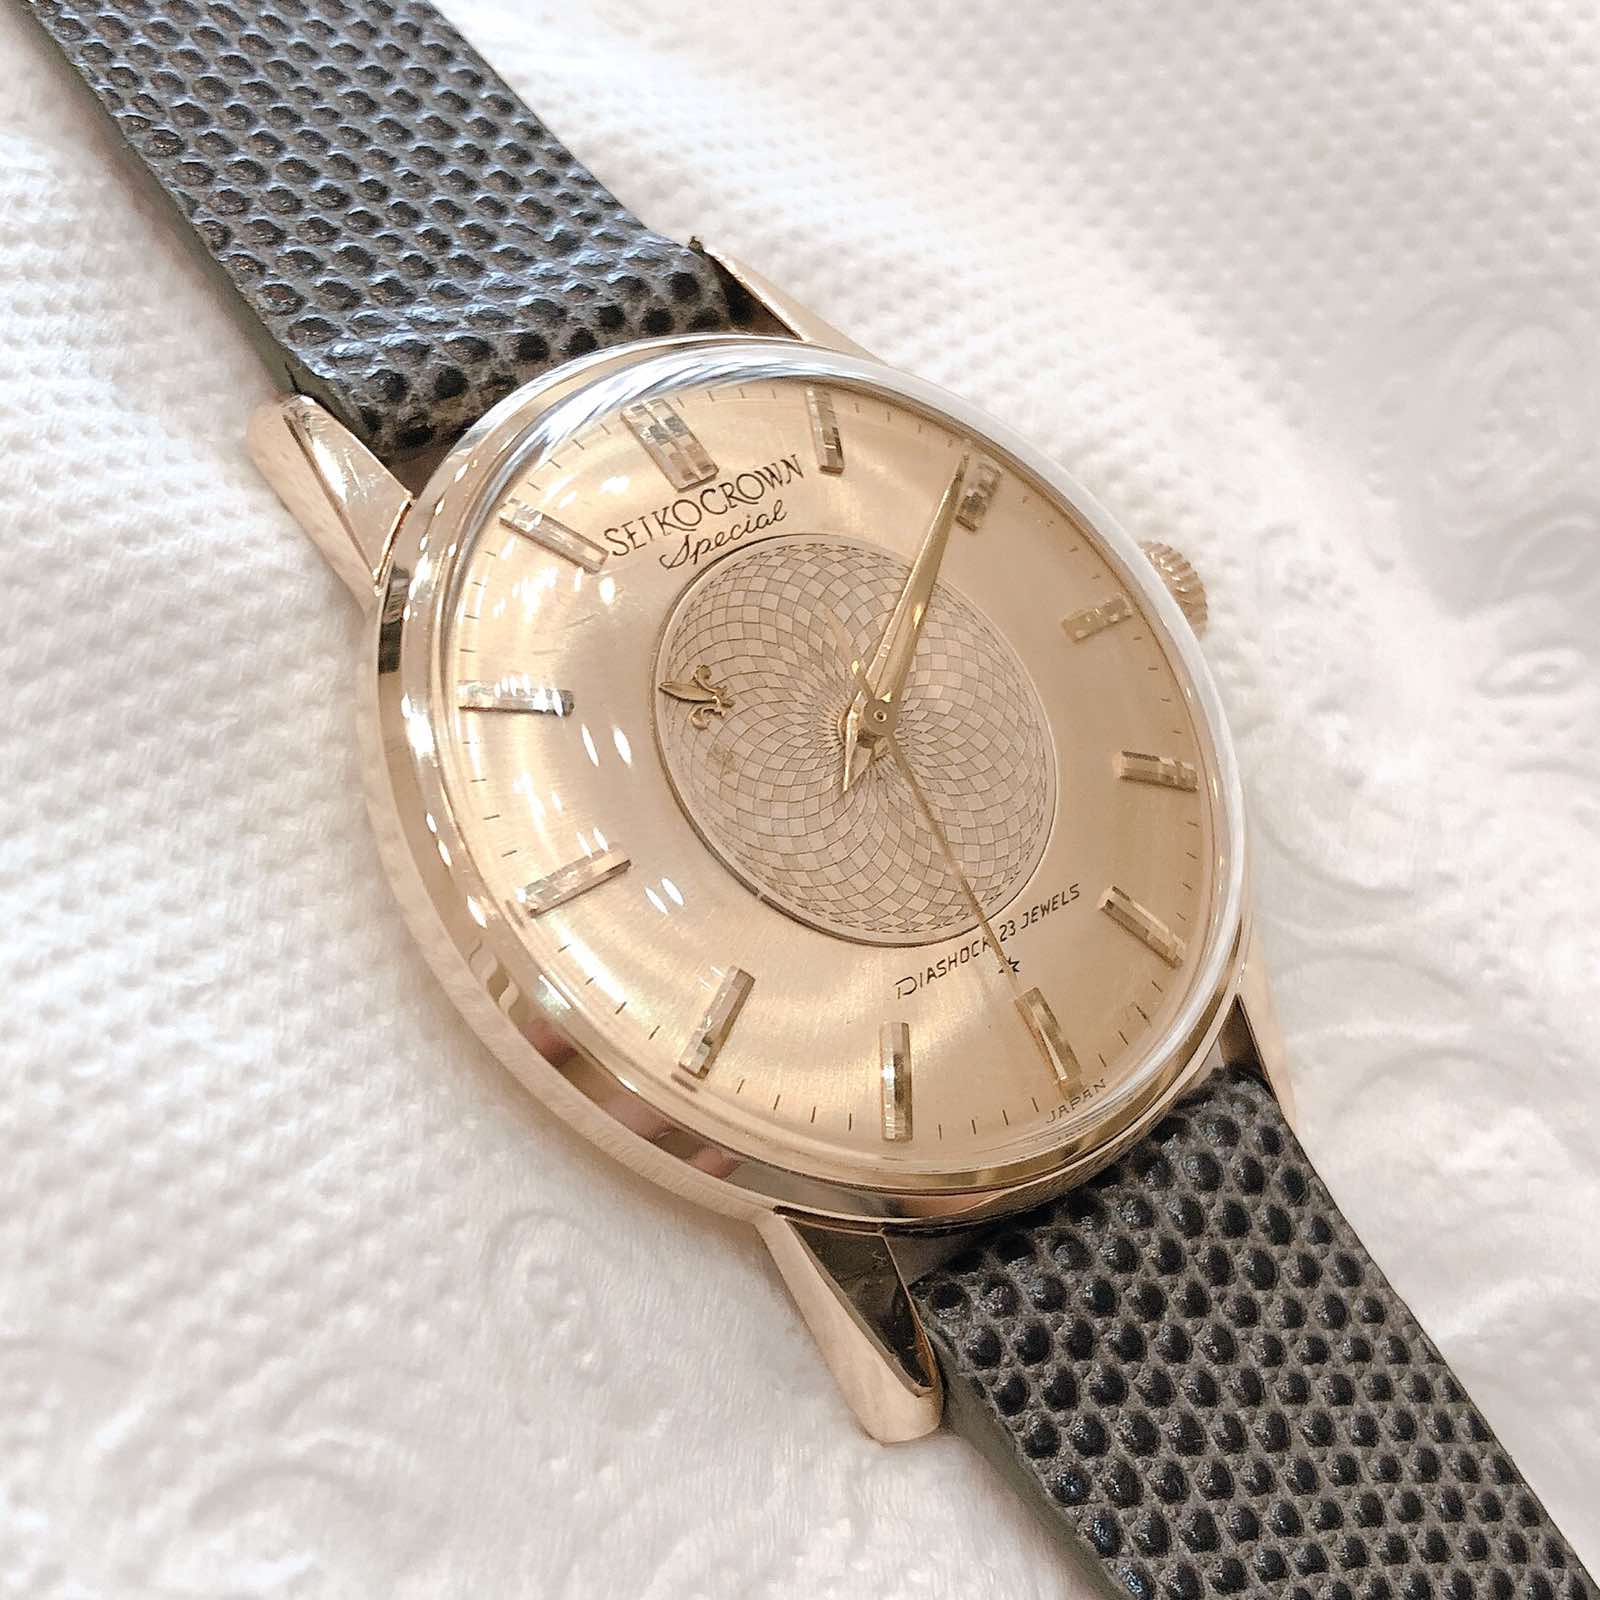 Đồng hồ cổ Seiko Crown phiên bản special kim đĩa lên dây 14k goldfilled chính hãng nhật bản